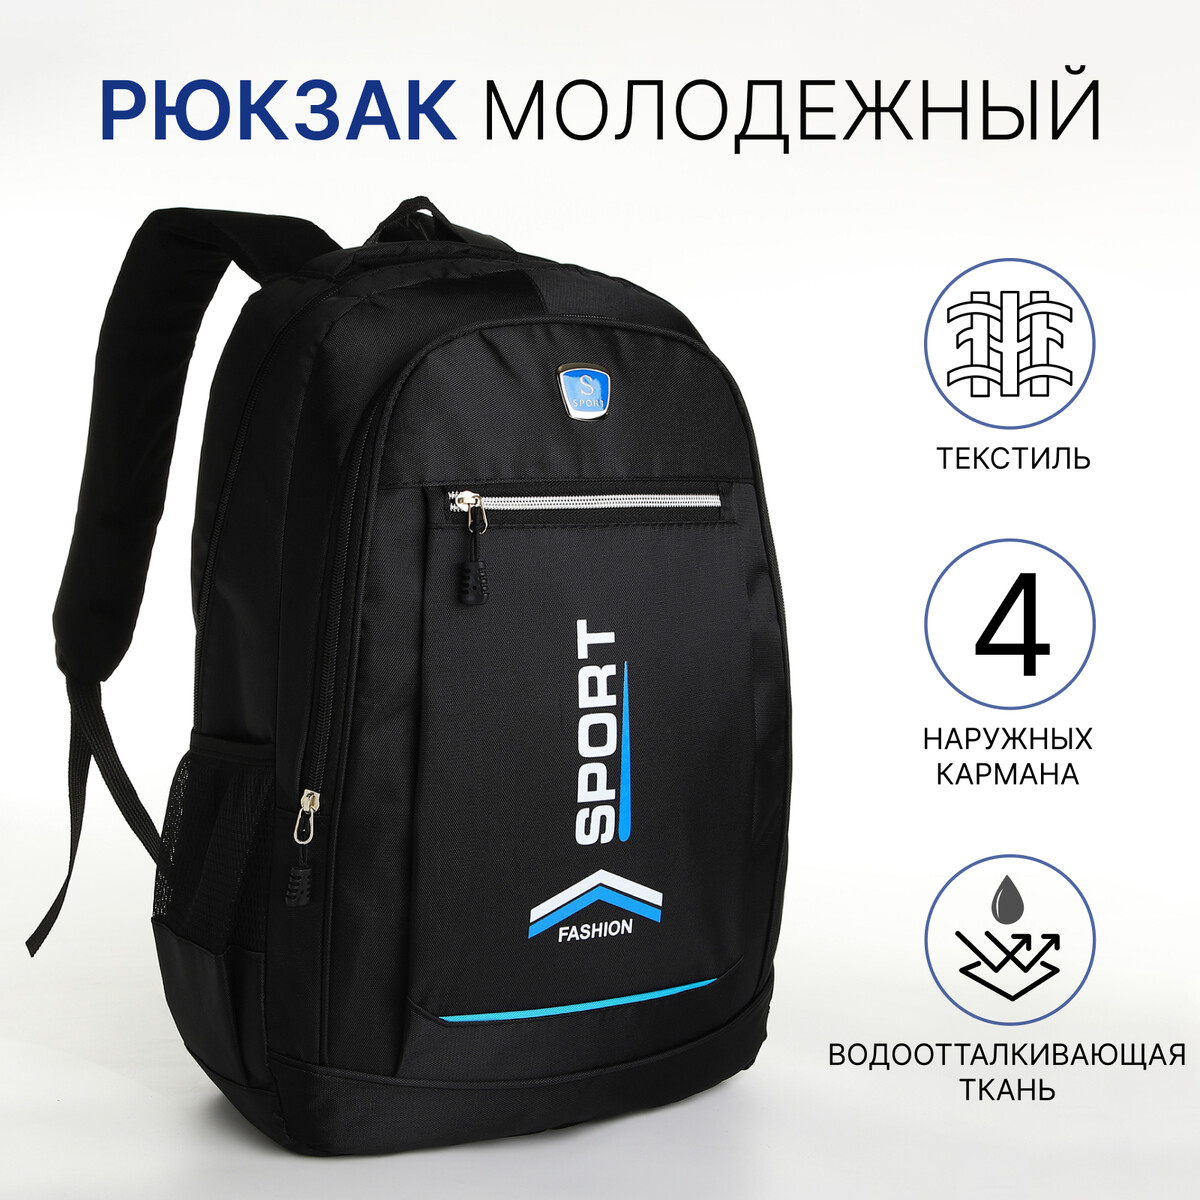 Рюкзак молодежный на молнии, 4 кармана, цвет черный/синий рюкзак молодежный из текстиля на молнии 3 кармана сумка держатель для чемодана синий